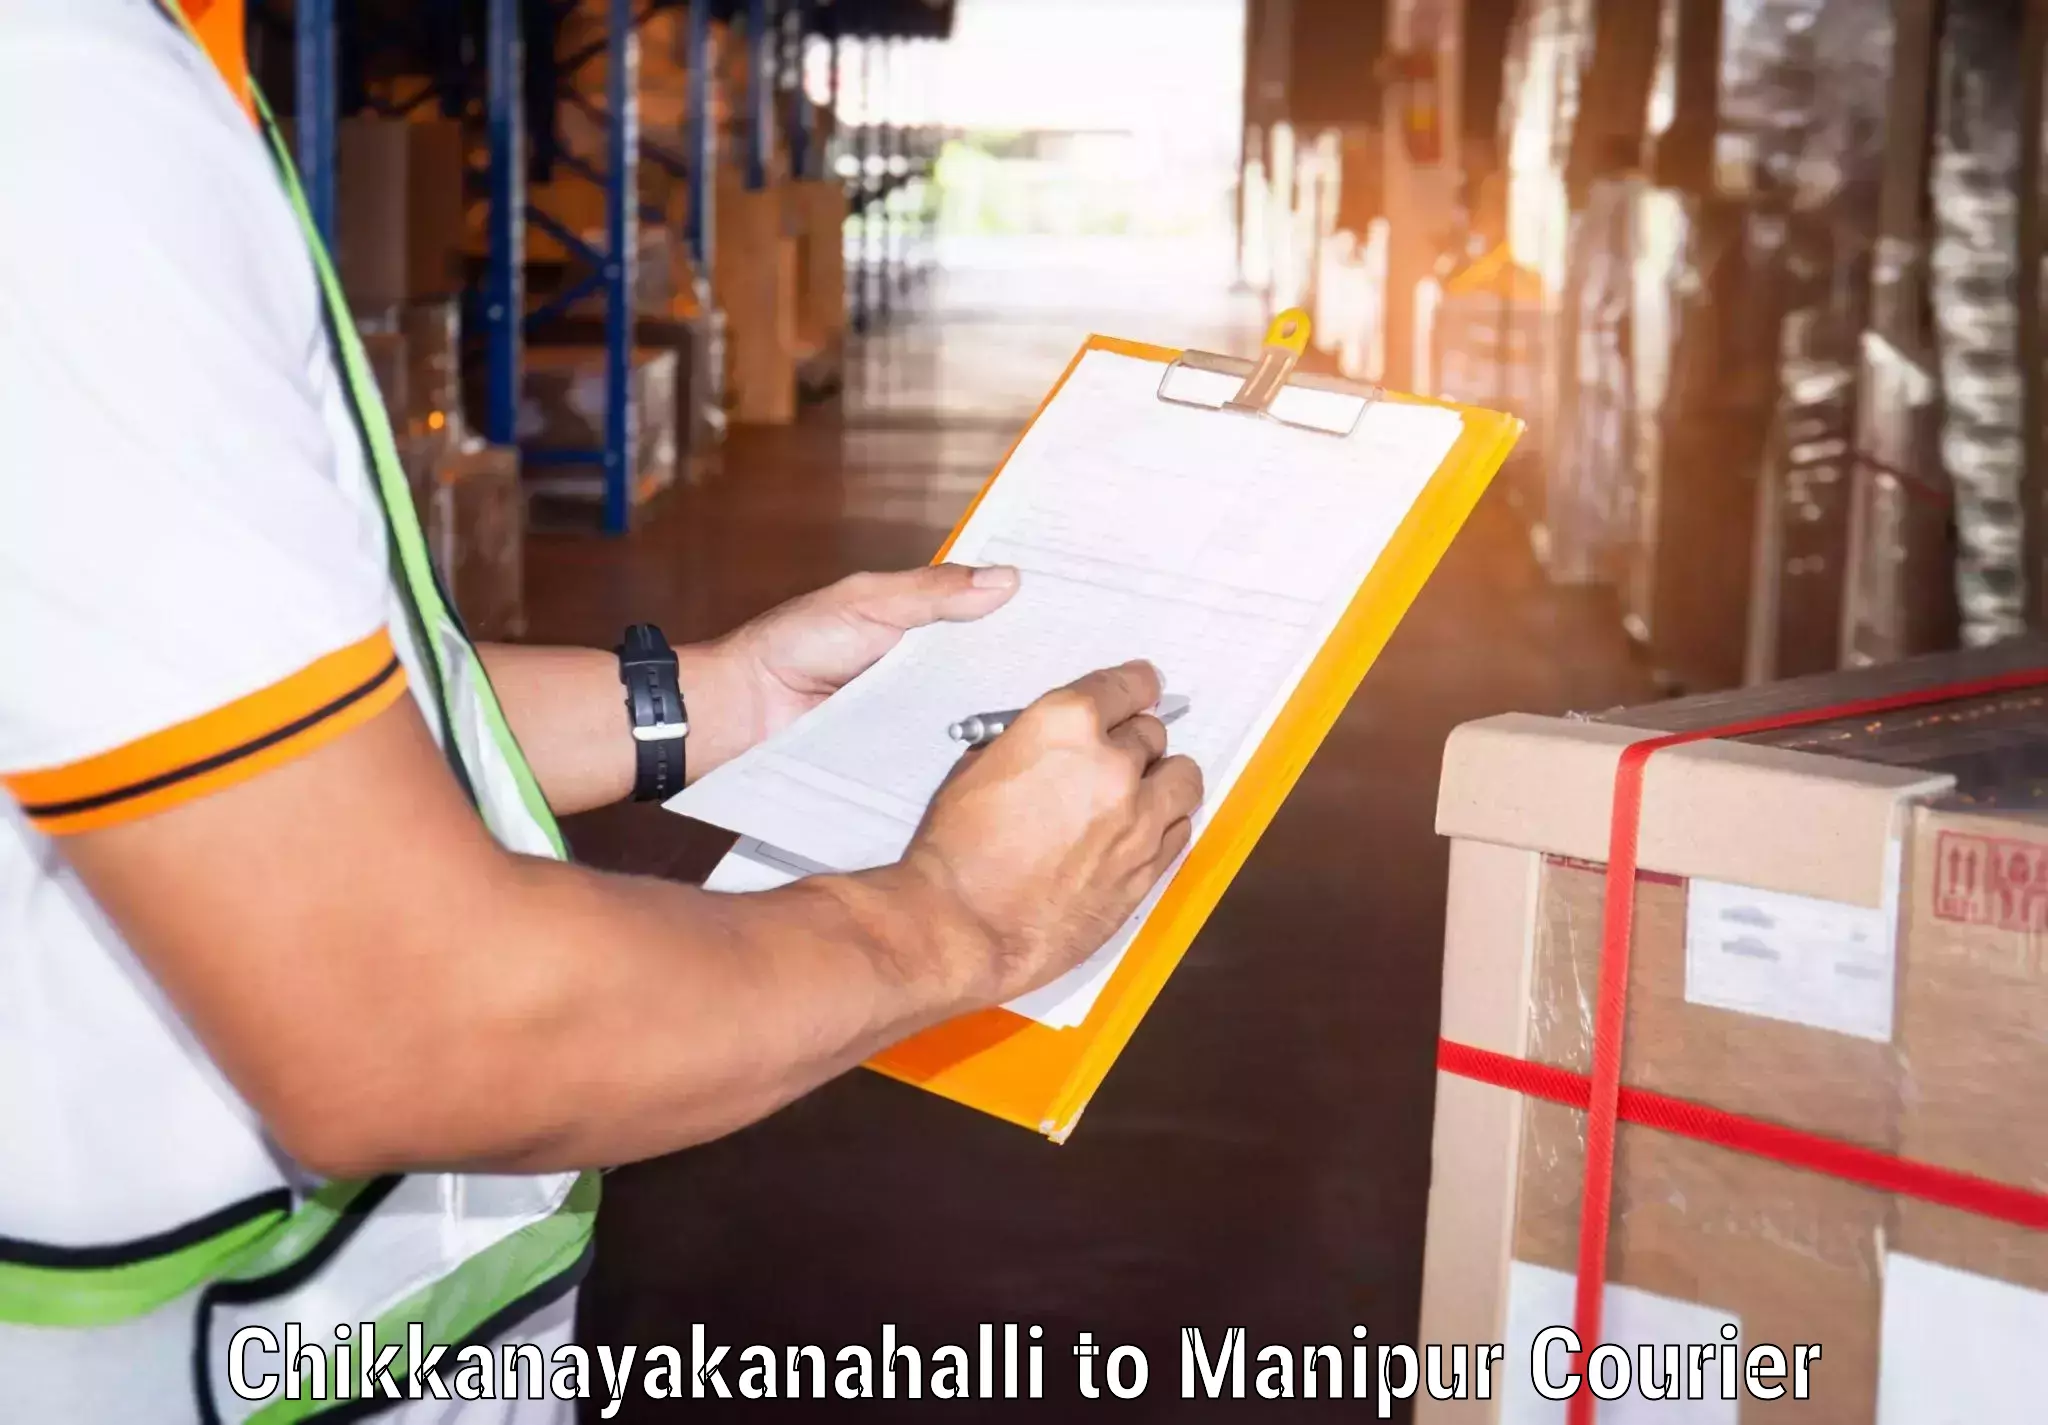 Nationwide shipping coverage in Chikkanayakanahalli to Tadubi